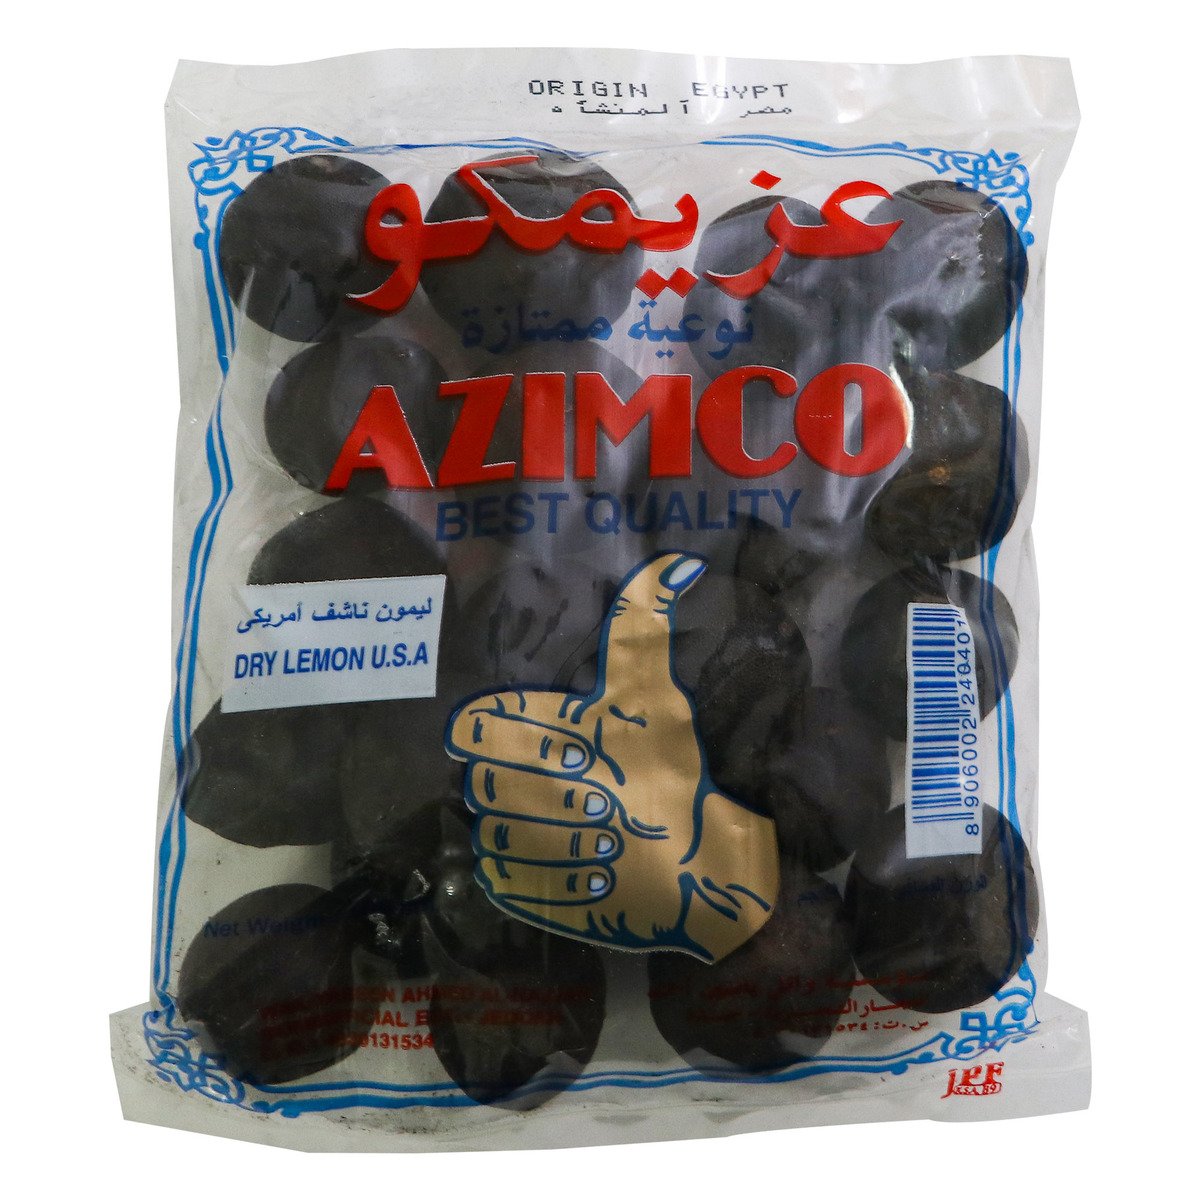 Azimco Dry Lemon USA 100g